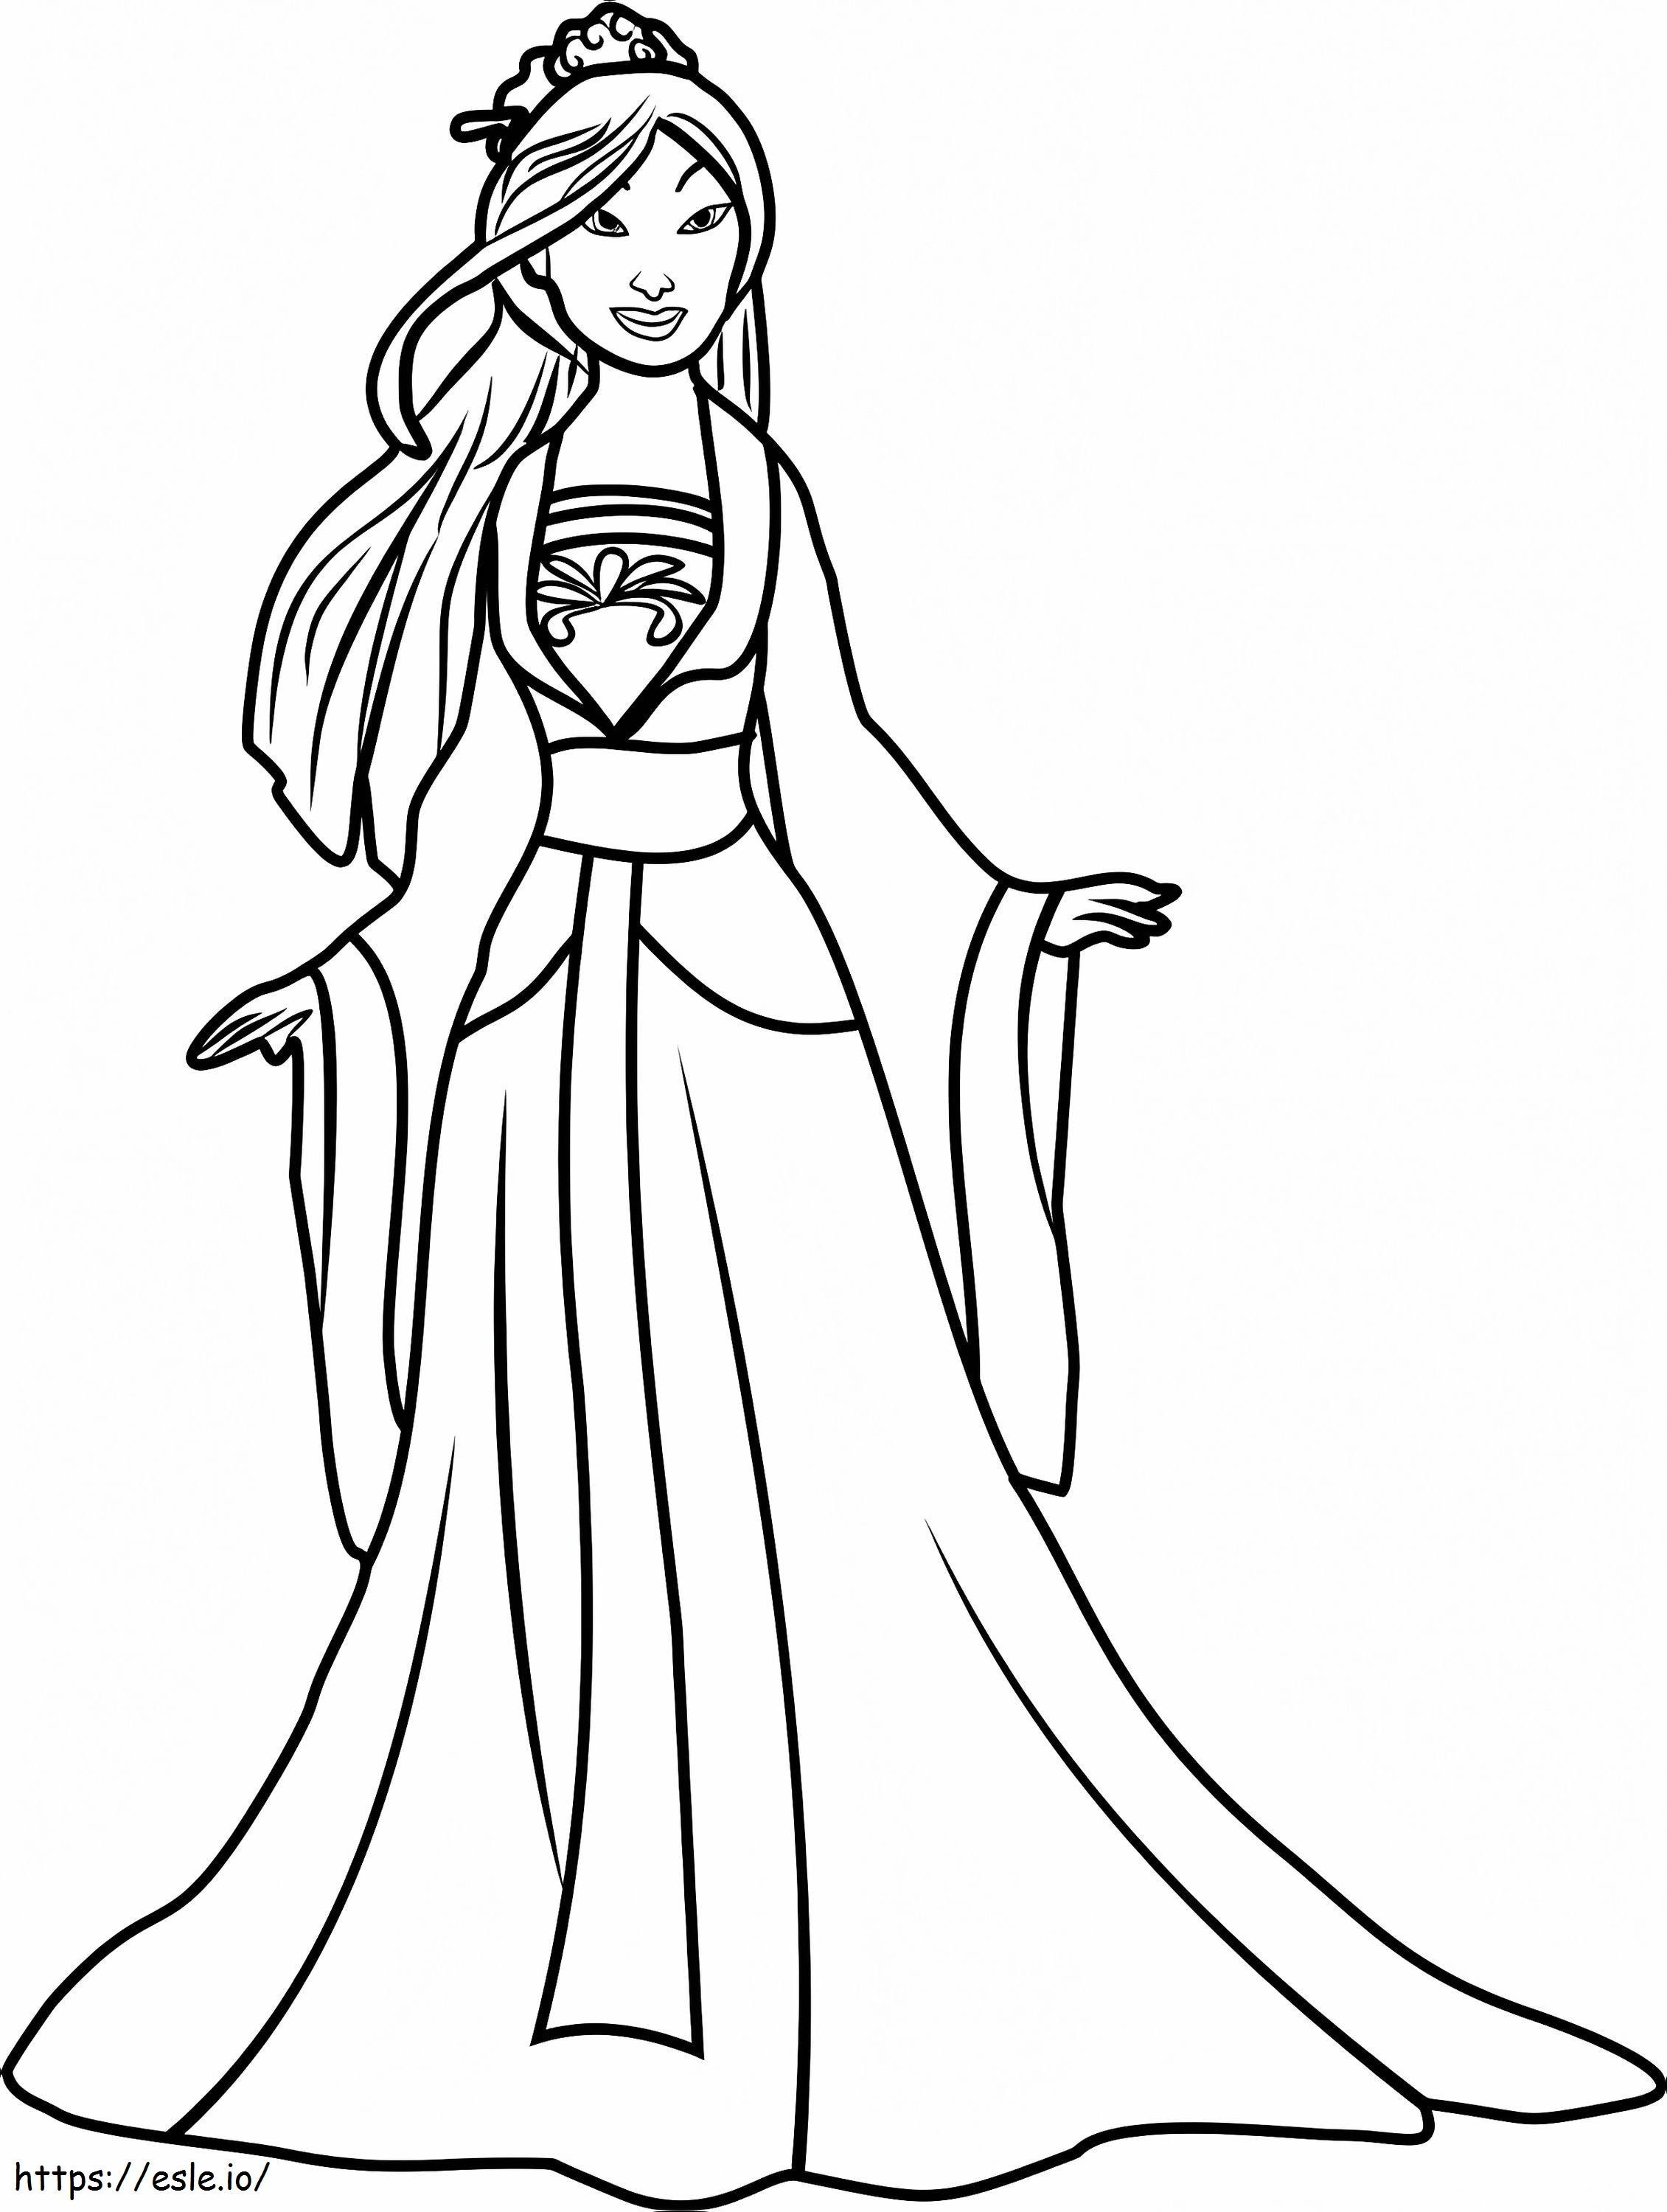 Princess Mulan1 coloring page